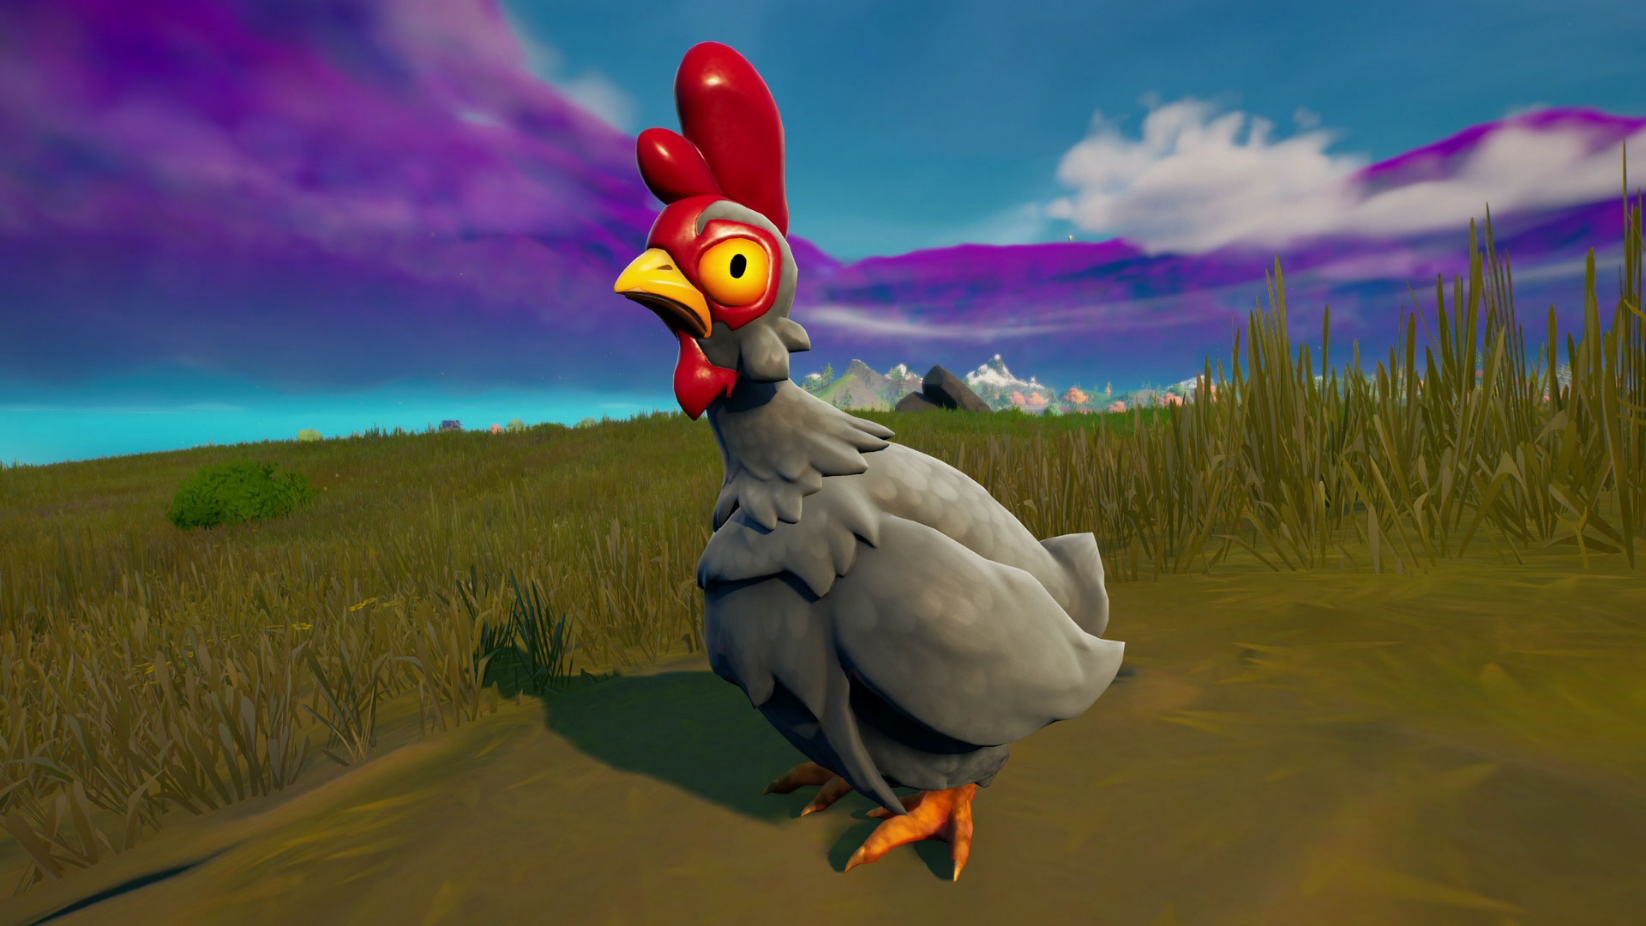 Chicken Royale: O jogo battle royale com galinhas